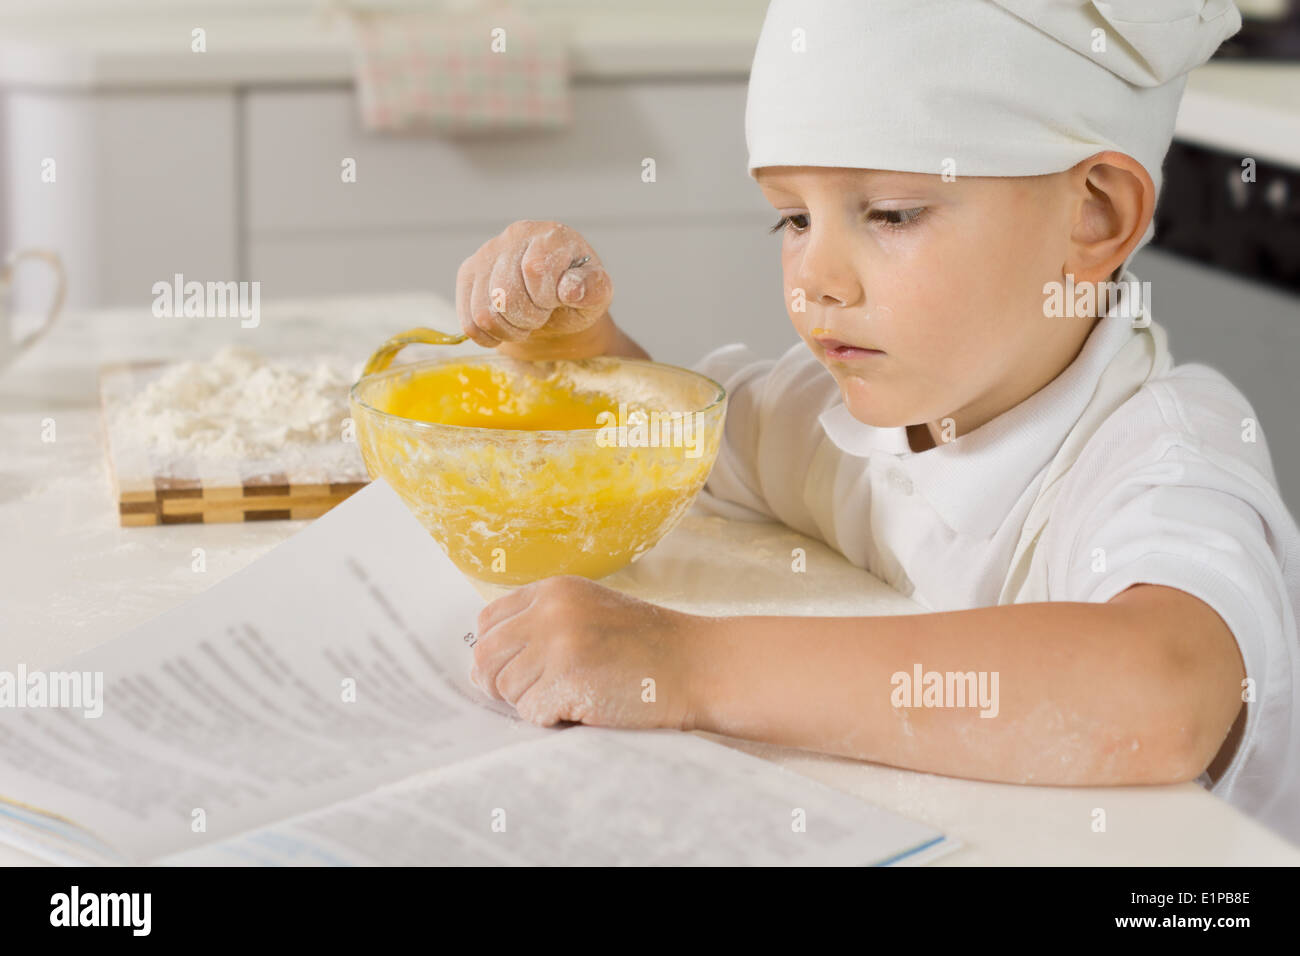 Mignon petit garçon dans un tablier blanc et chefs toque la lecture d'une recette comme il cuisine dans la cuisine le mélange des ingrédients dans un bol Banque D'Images